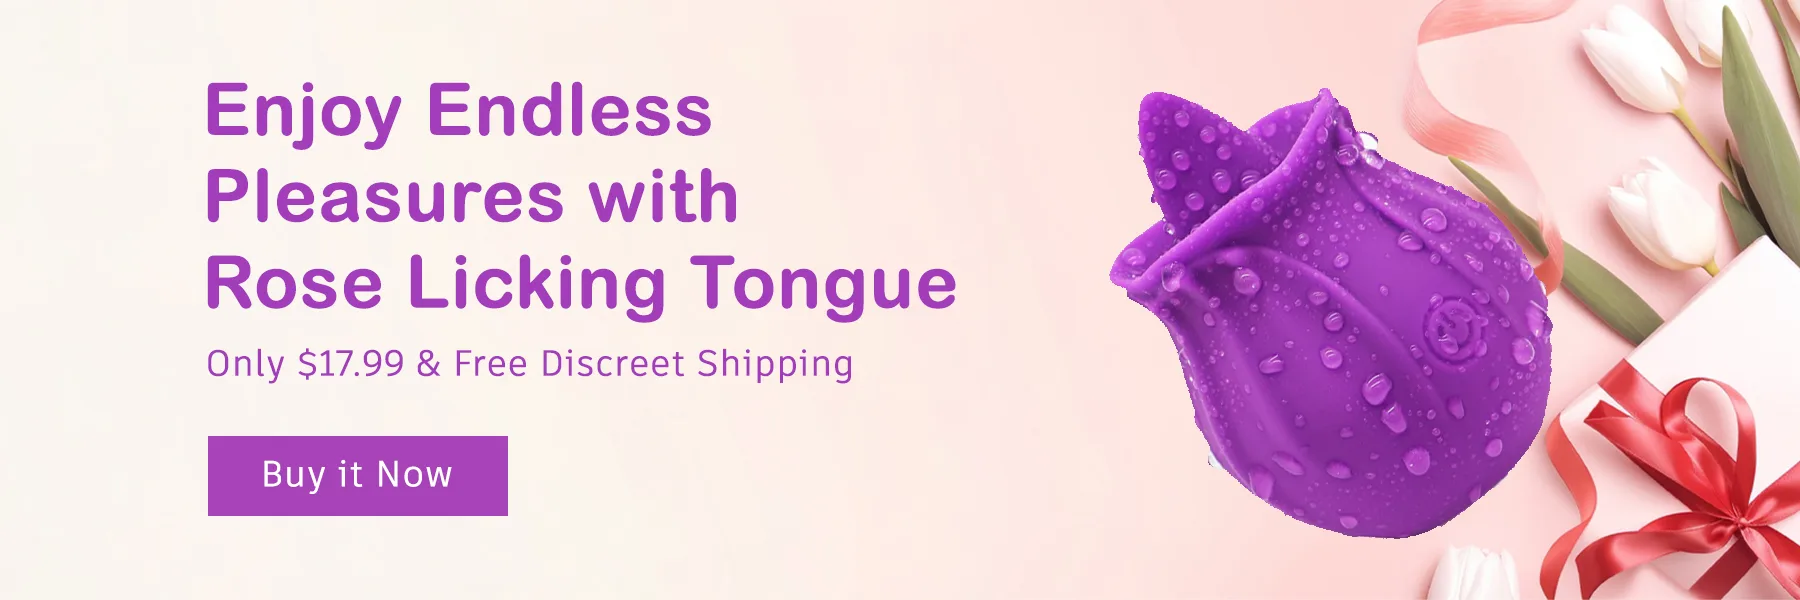 banner - rose licking tongue